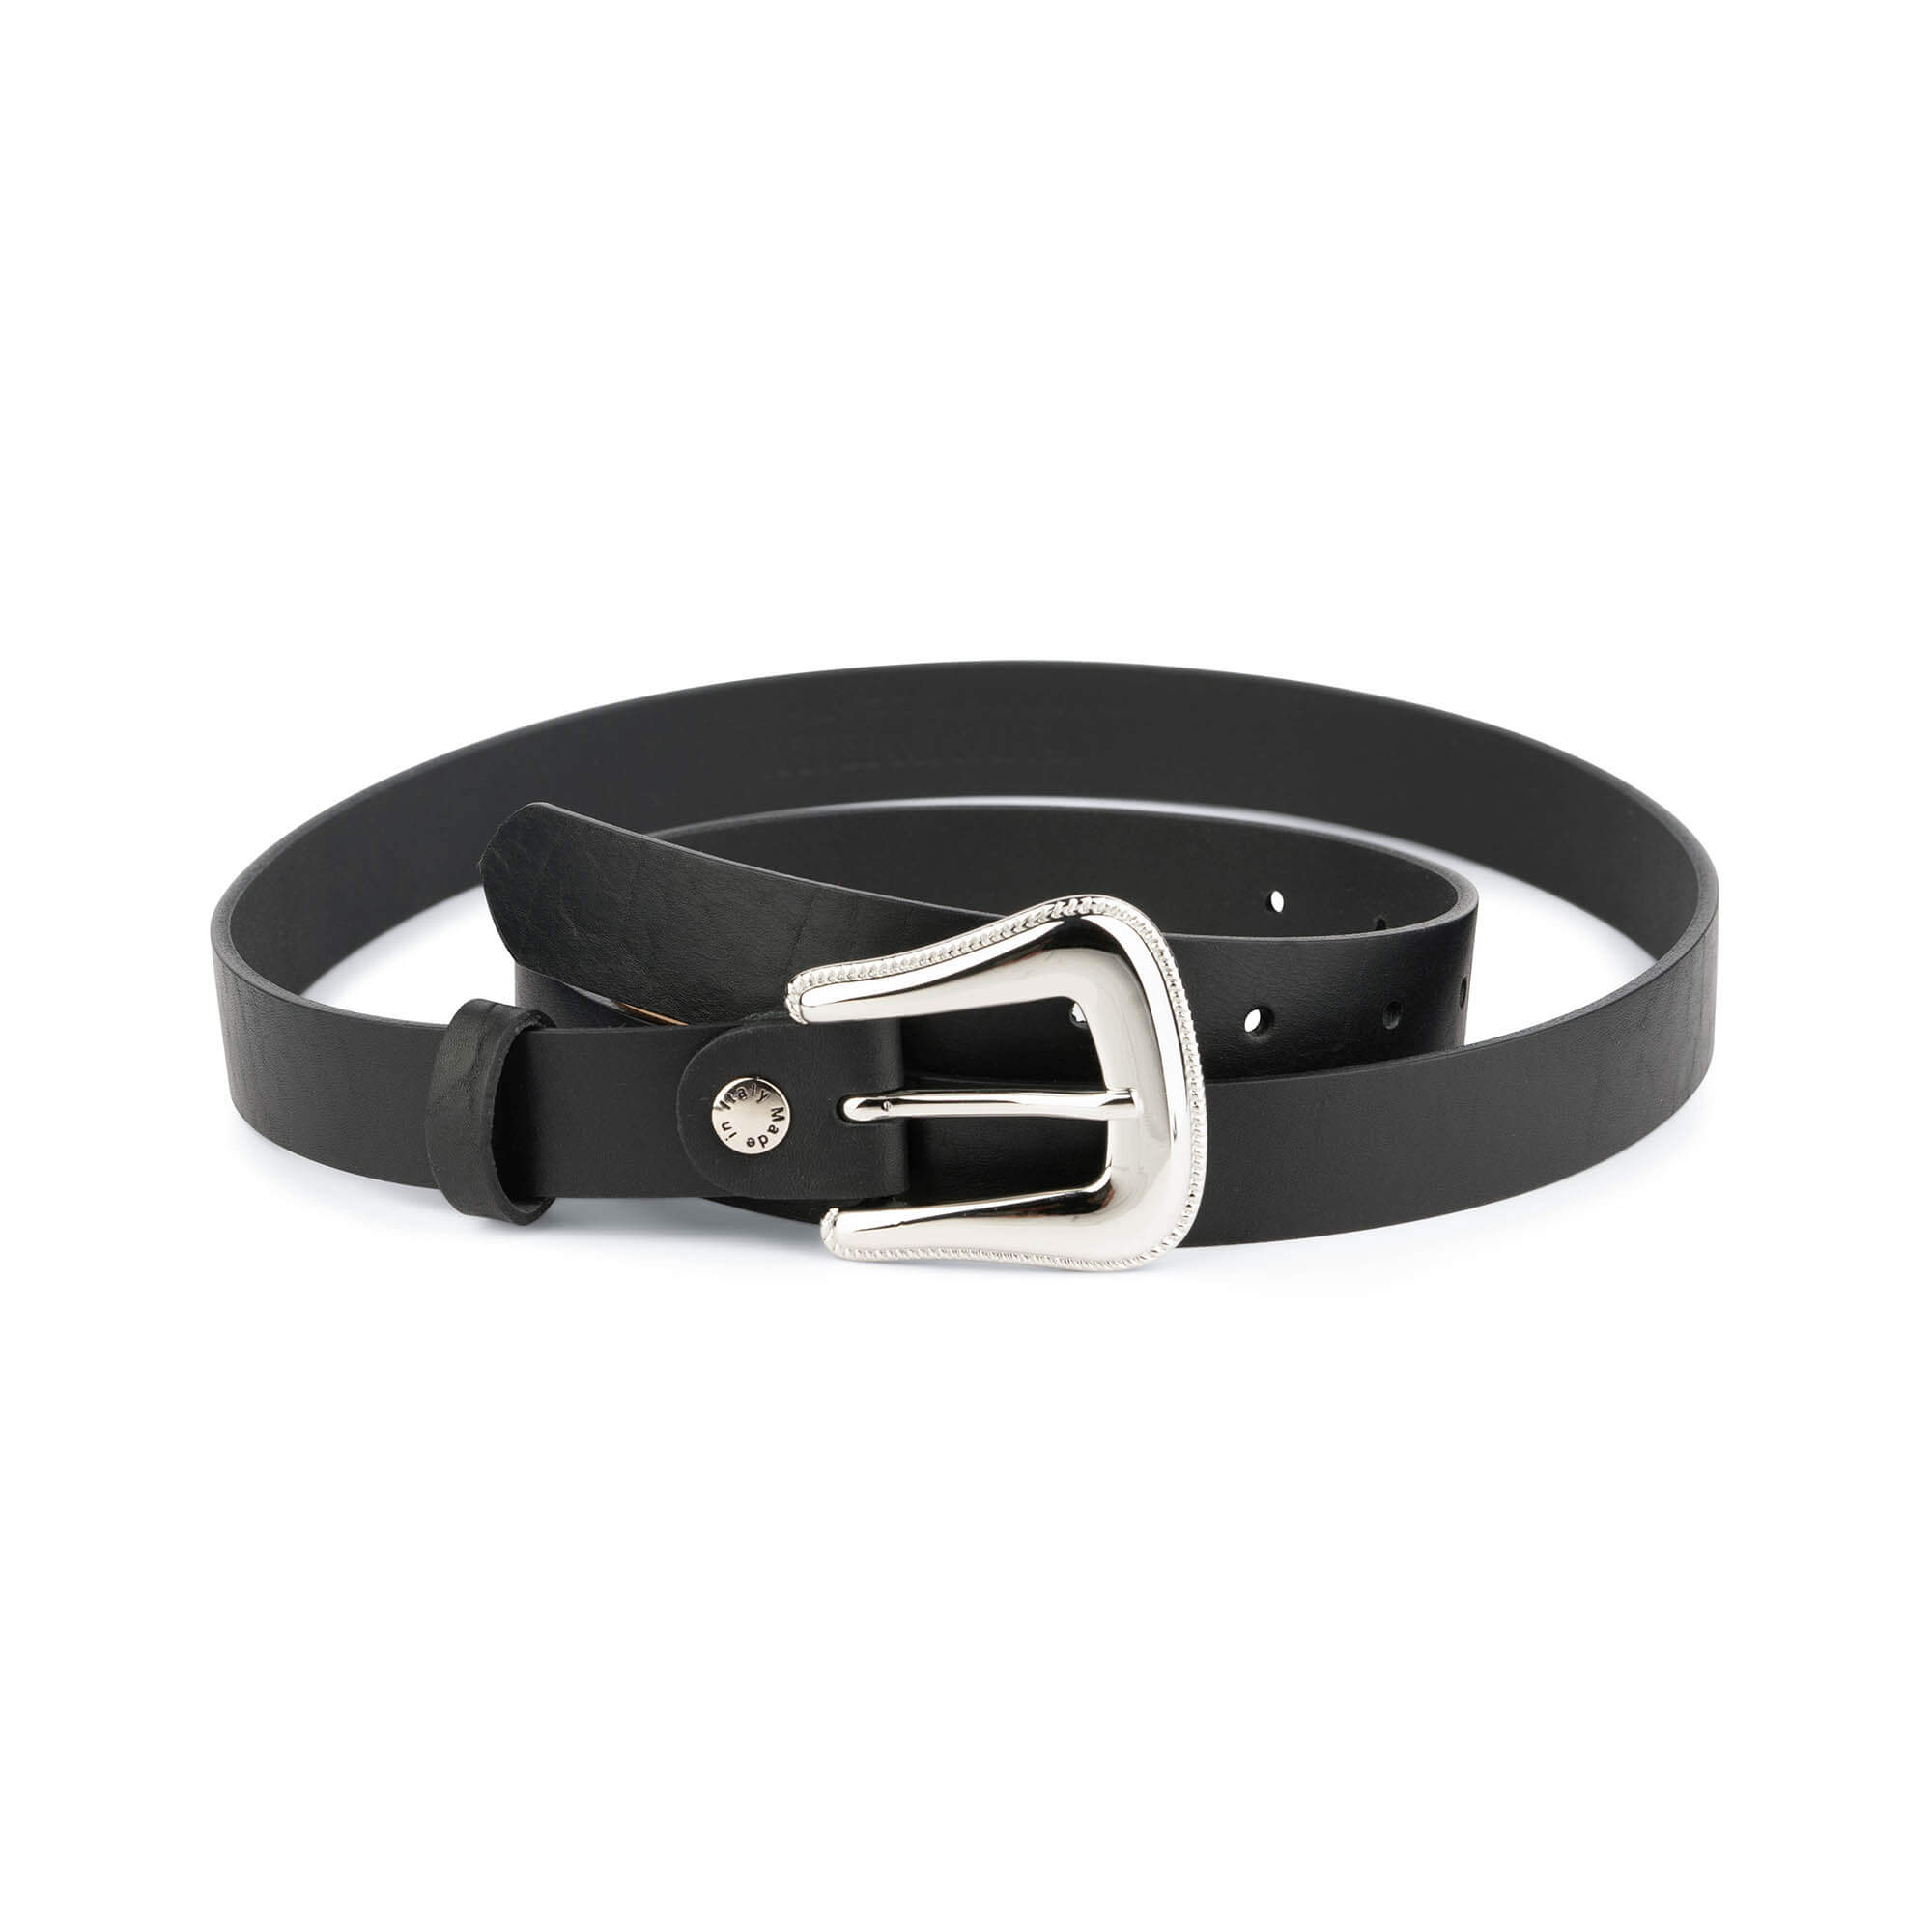 Buy Black Western Belts For Women With Silver Buckle | LeatherBelts